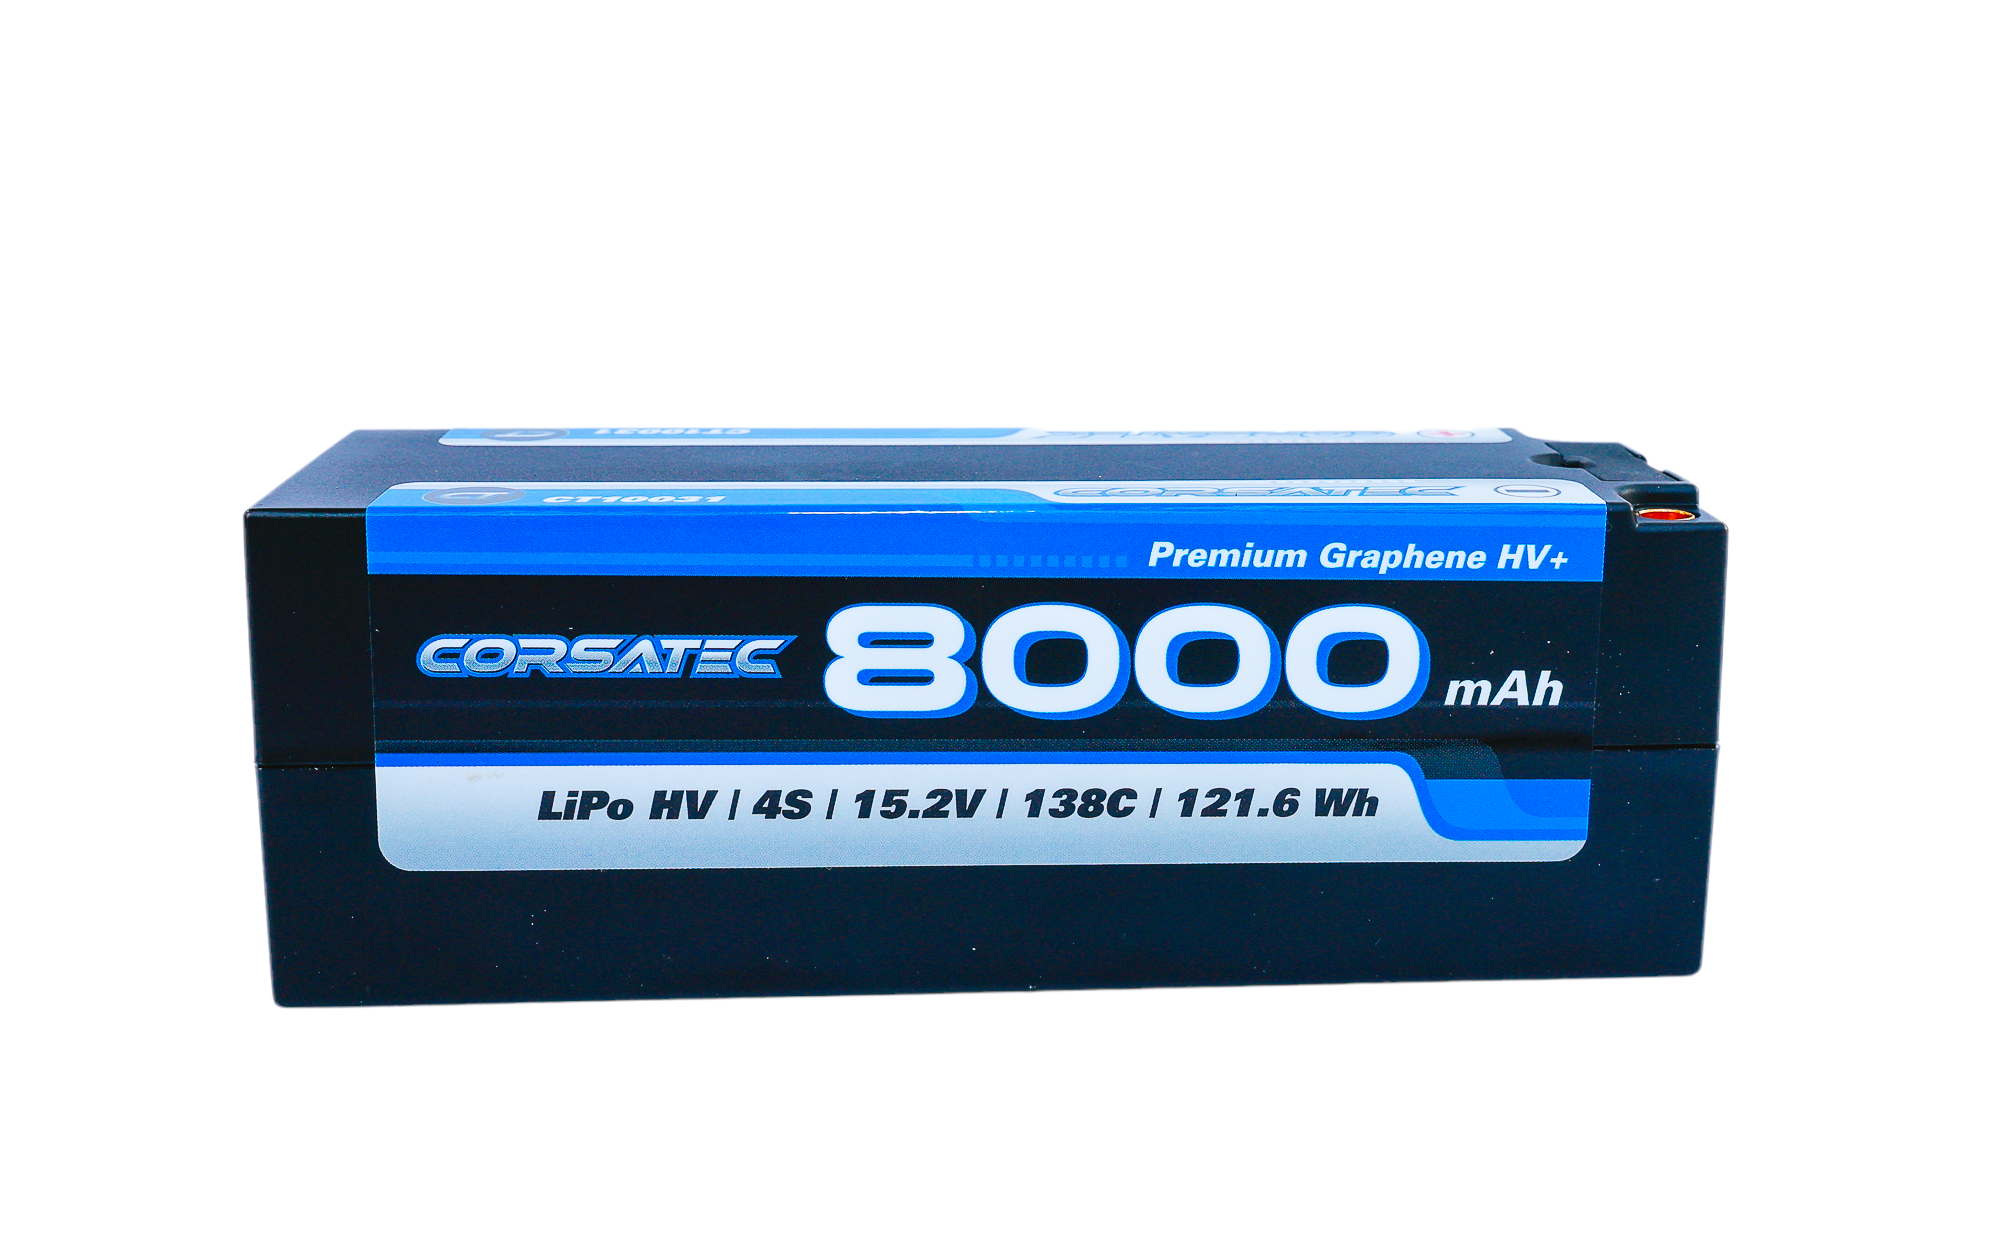 Corsatec Lipo 4s Stick 8000mah Graphene HV+ CT10031